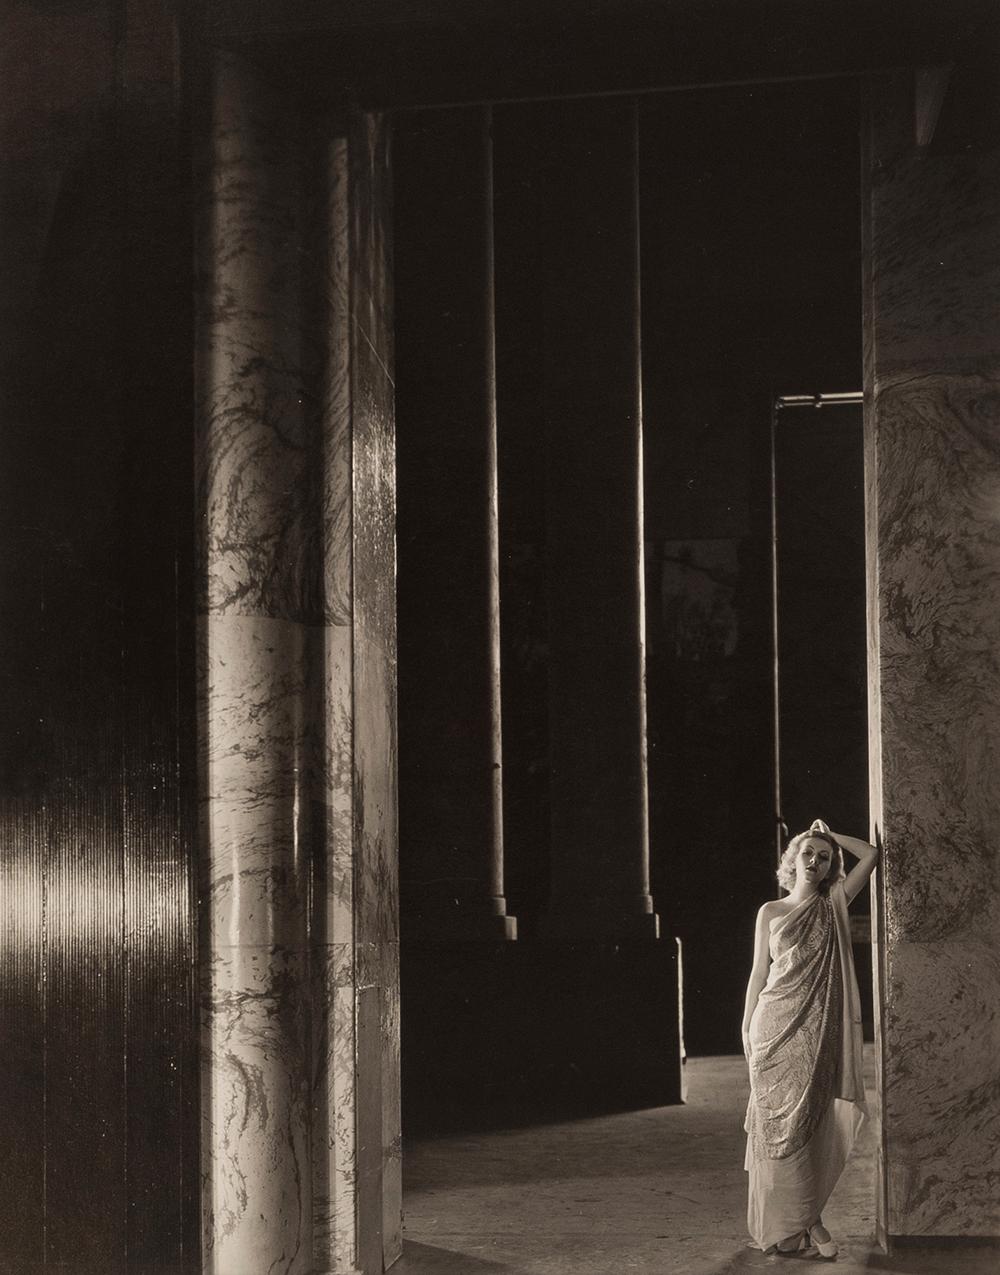 Karen Morely, 1932 - Cecil Beaton (Porträtfotografie)
Von unbekannter Hand mit "Karen Morely" beschriftet und auf der Rückseite mit dem Tintenstempel des Fotografen und des Sotheby's Cecil Beaton Studio versehen
Silbergelatineabzug, später